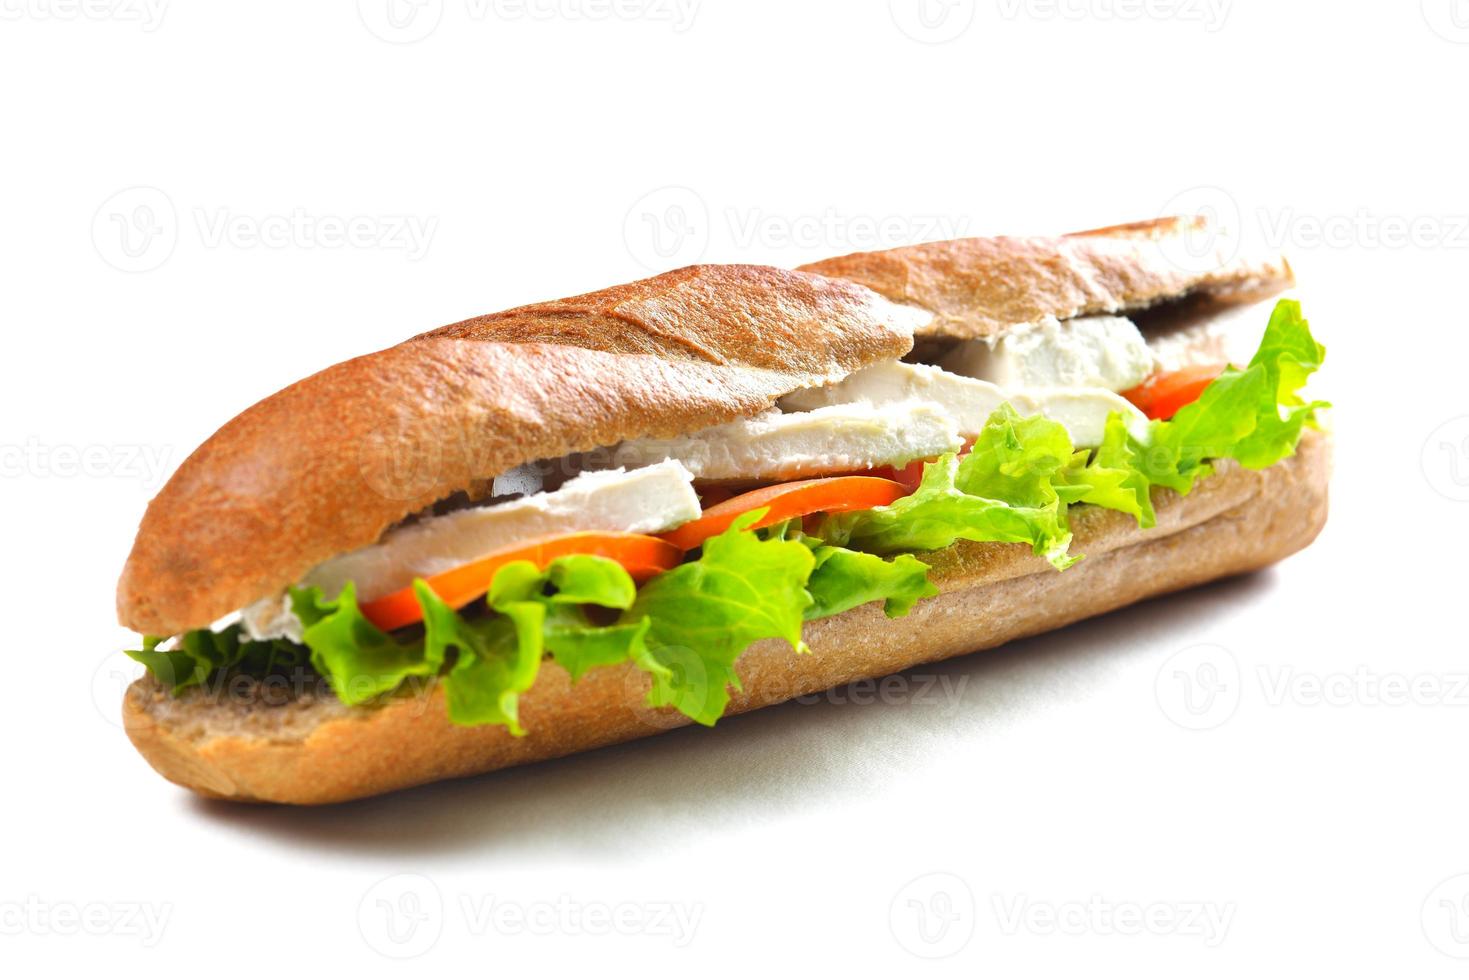 sándwich sobre una superficie blanca foto